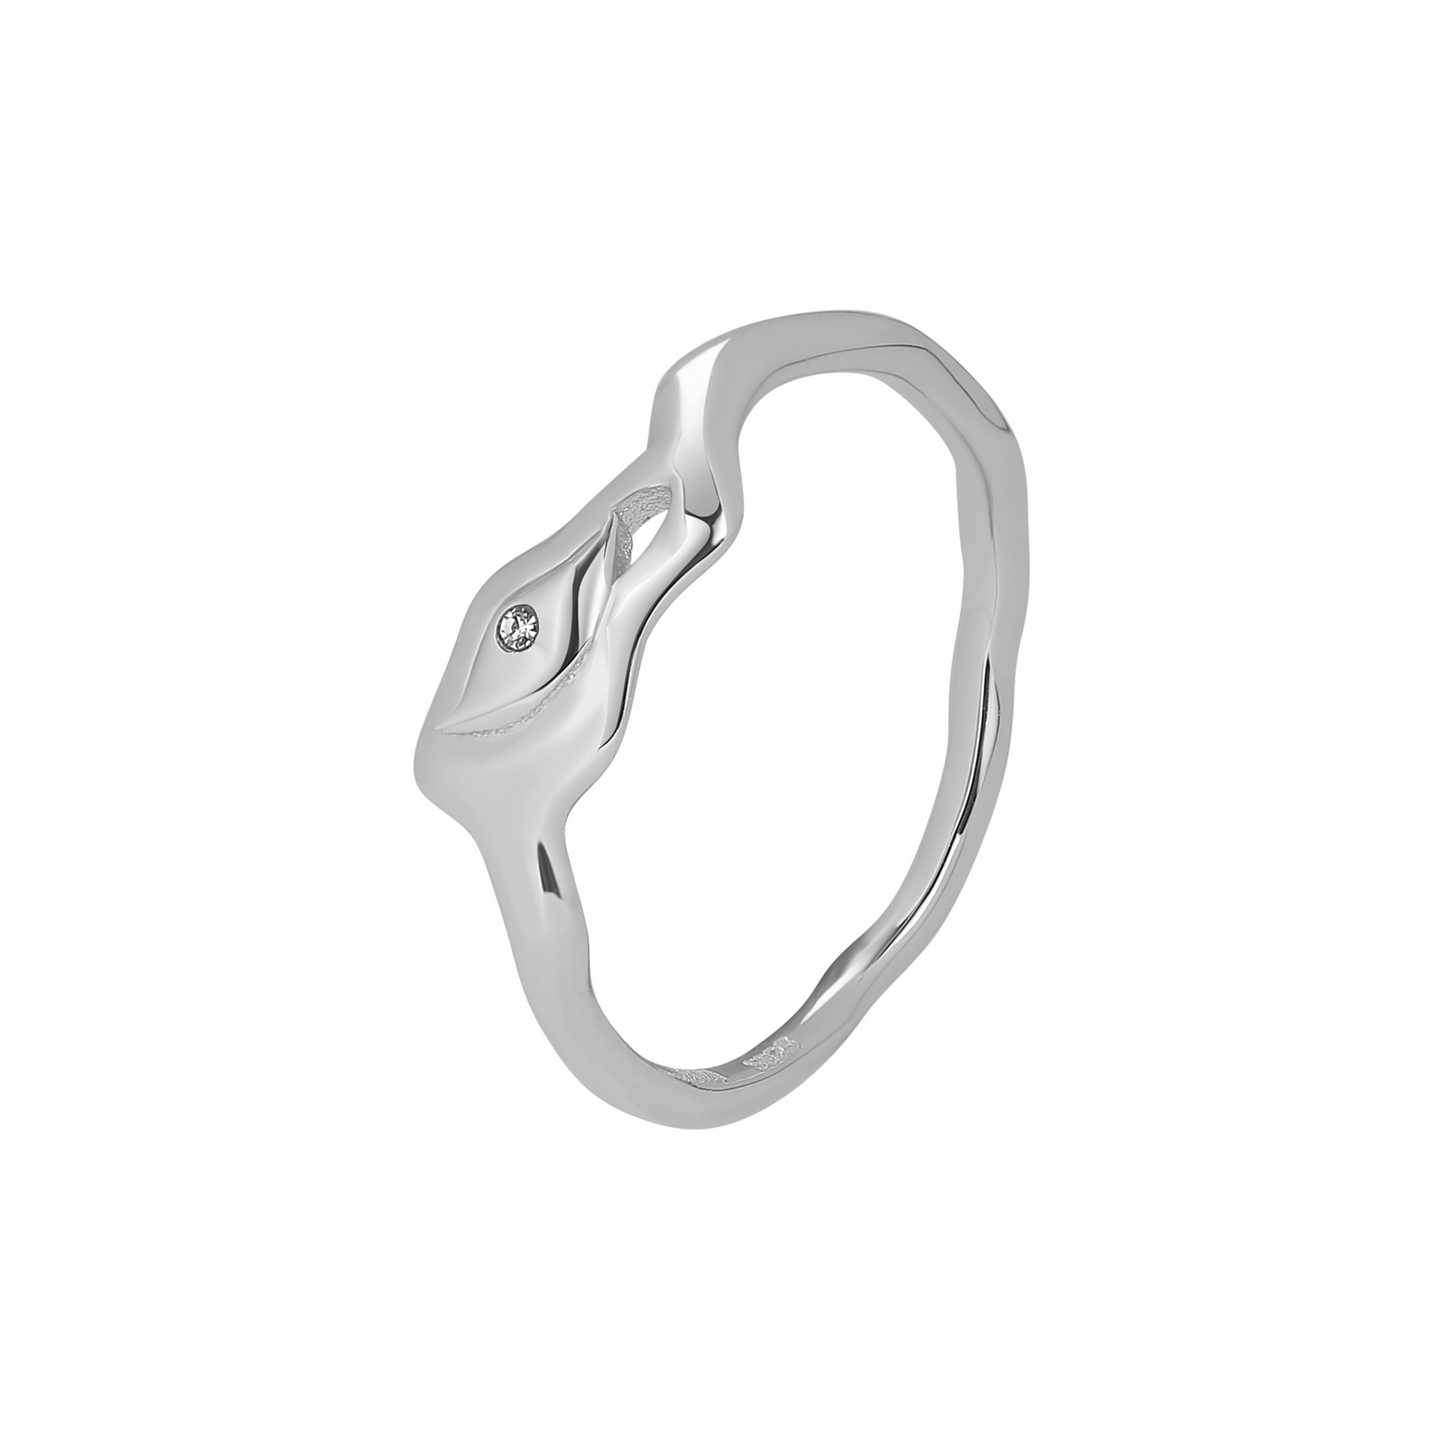 Nuray Ring / Silver